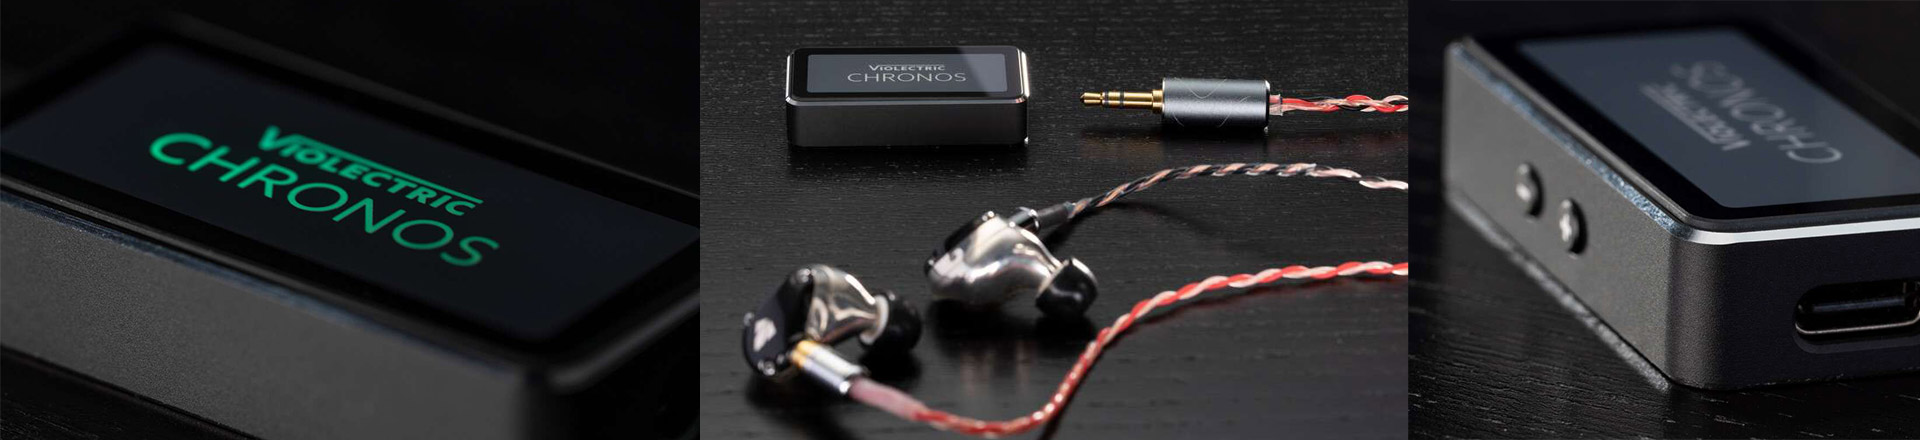 Super miniaturowy przetwornik, poprawiający brzmienie w Twoim telefonie i tablecie - Violectric Chronos